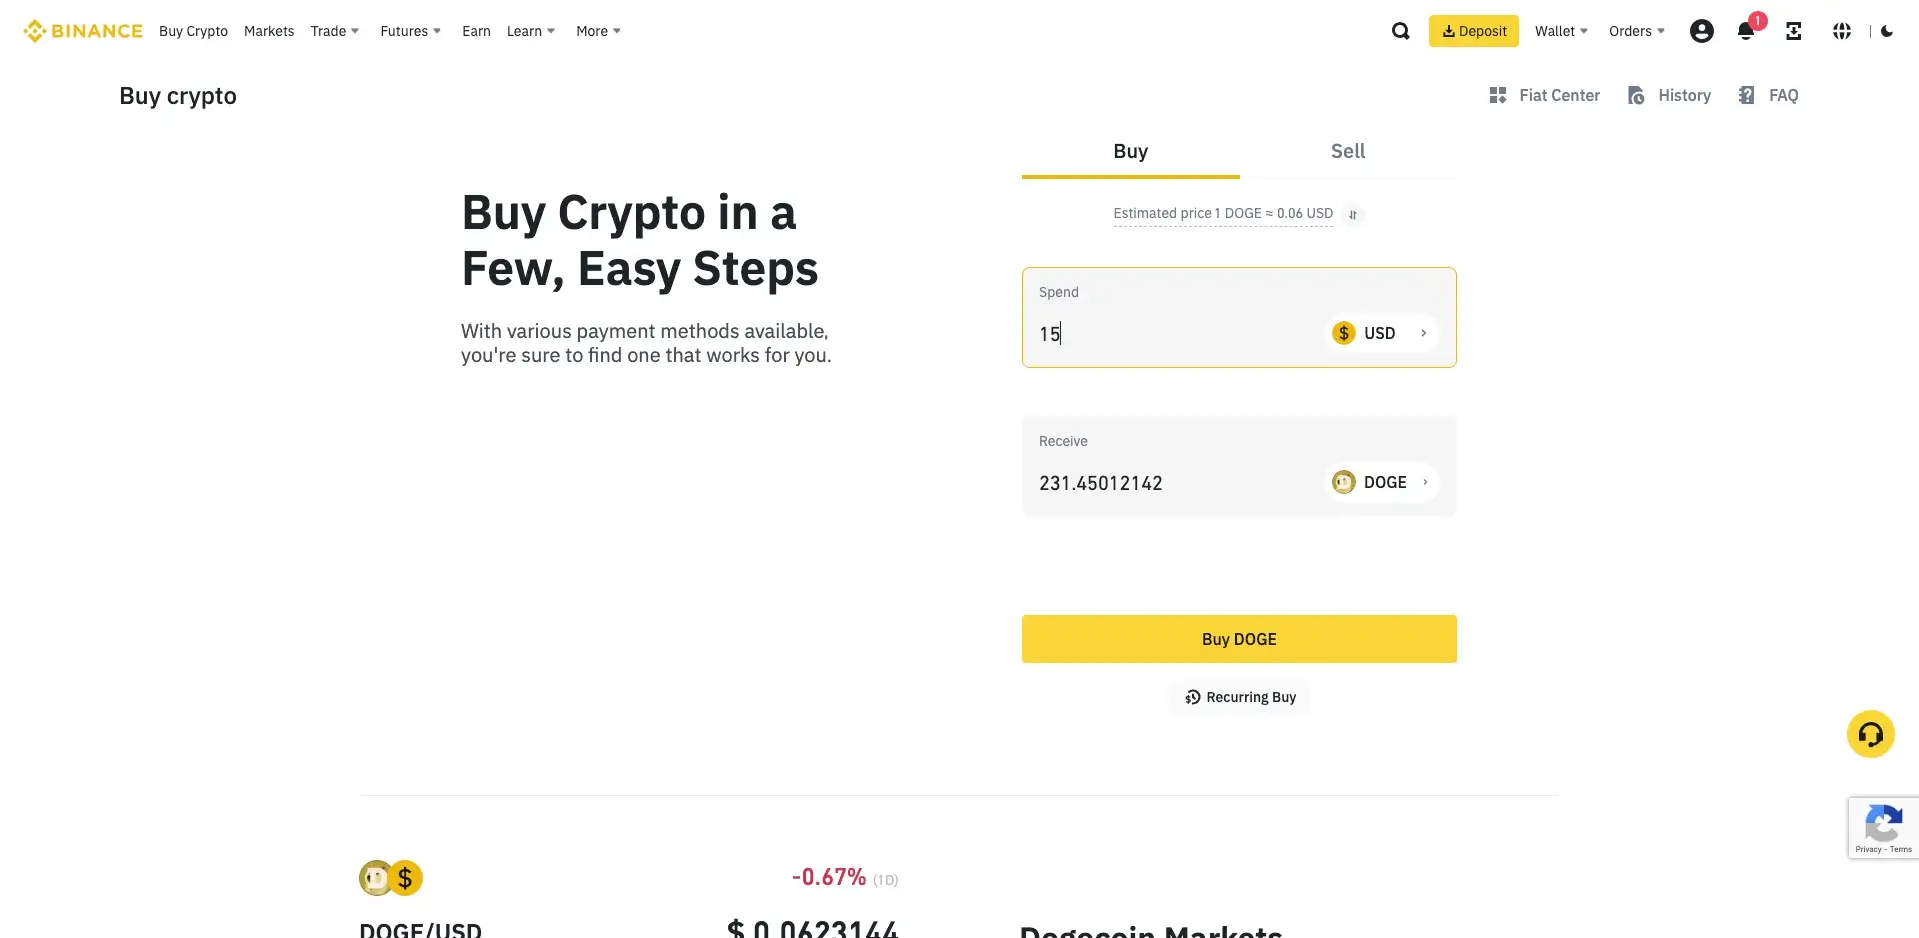 2. Click on "Buy Crypto"